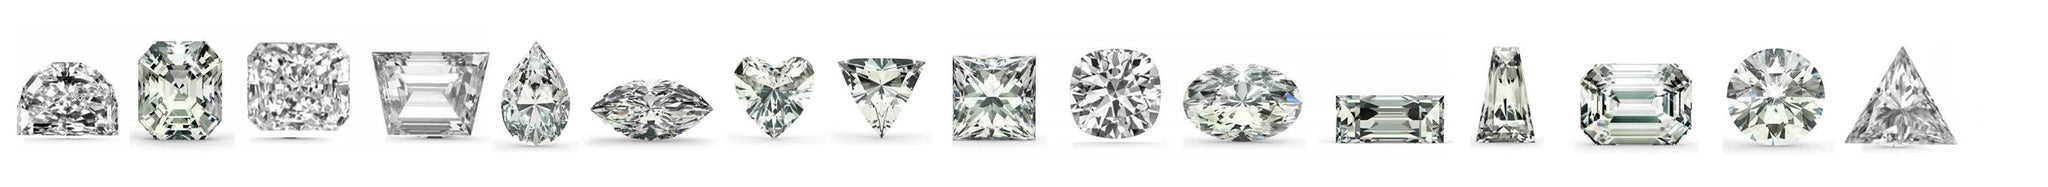 highest quality 5A AAAAA cubic zirconia gemstones